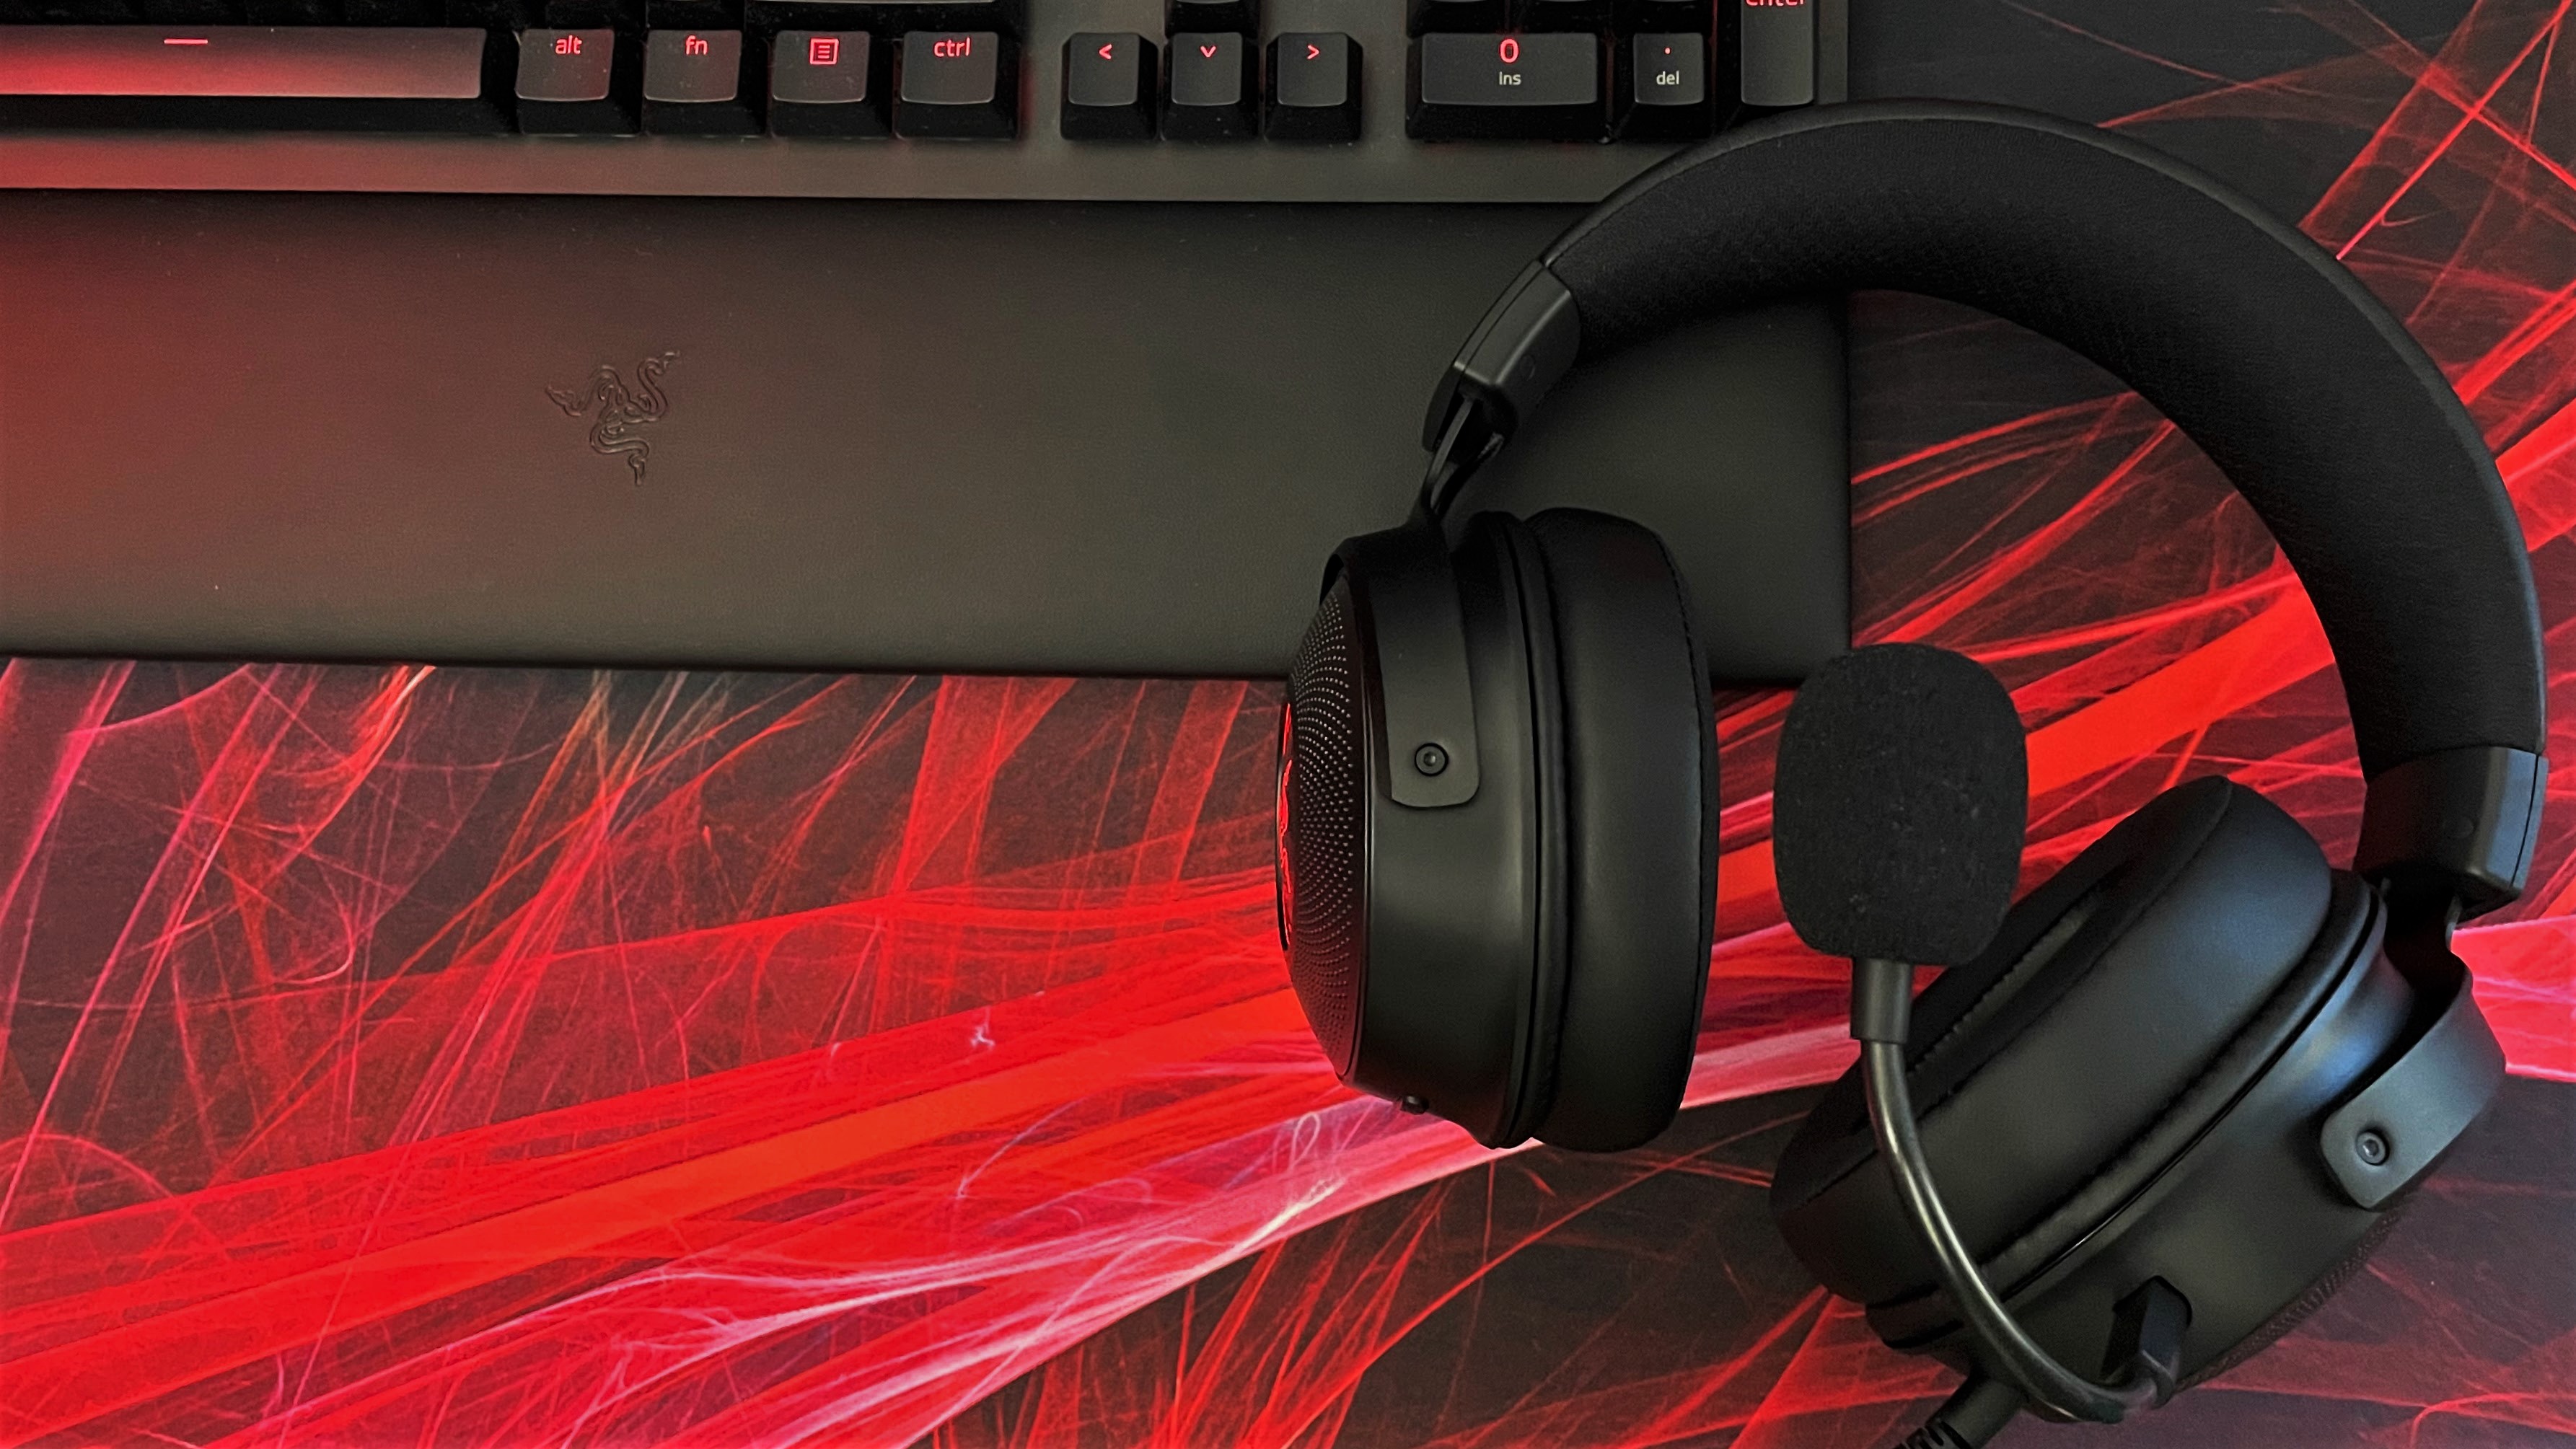 Razer Kraken V3 Pro Hypersense gaming headset review